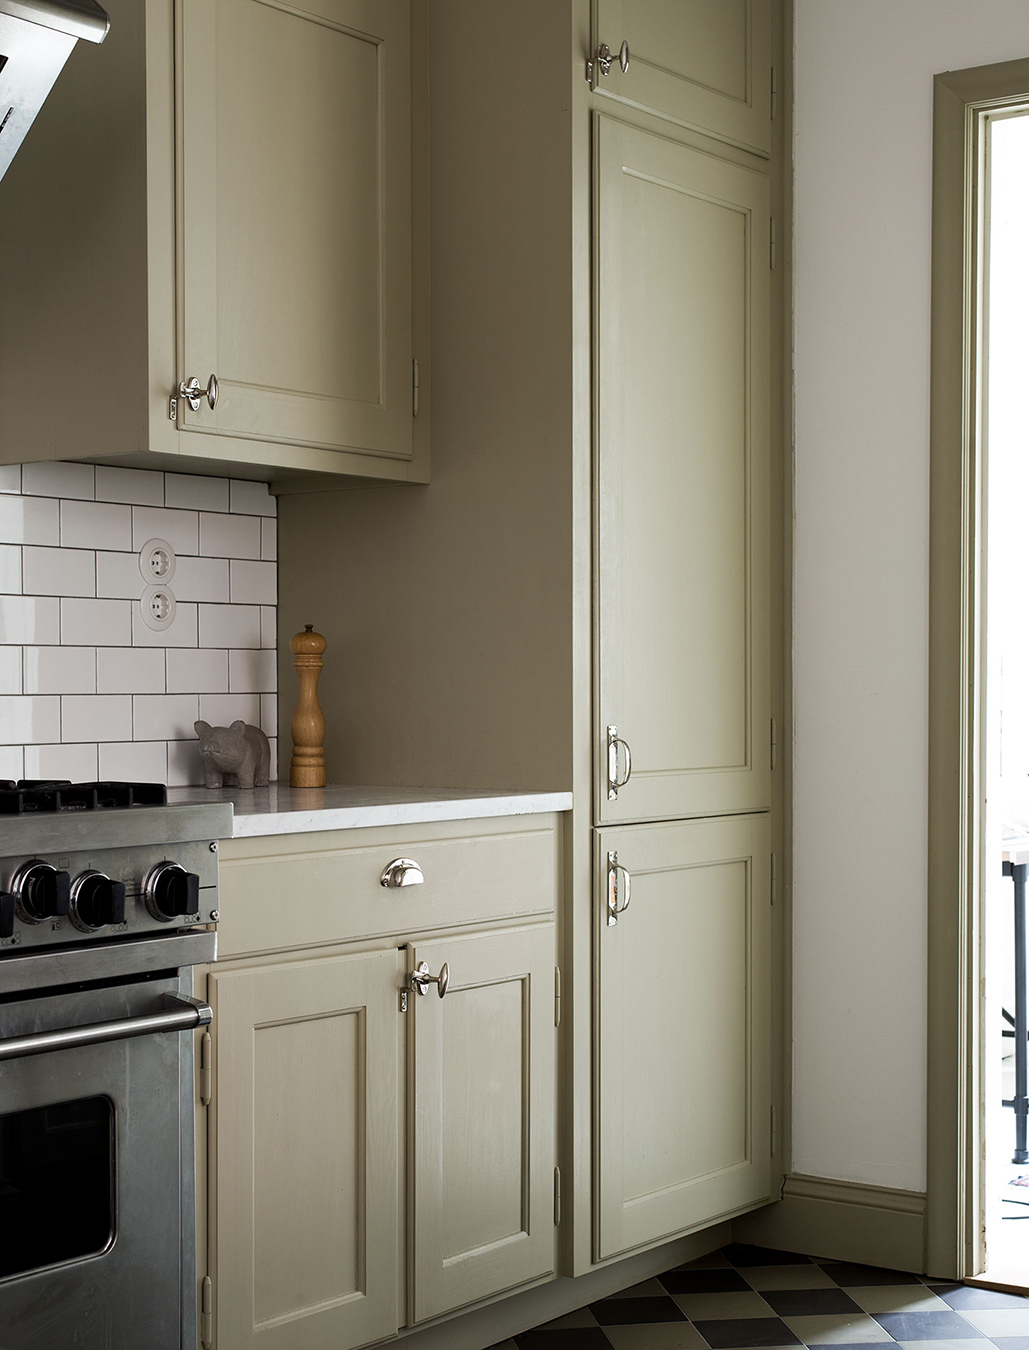 Måttbyggt kök målat med linoljefärg, kulör Vetegrå och försett med beslag i förnicklad mässing.